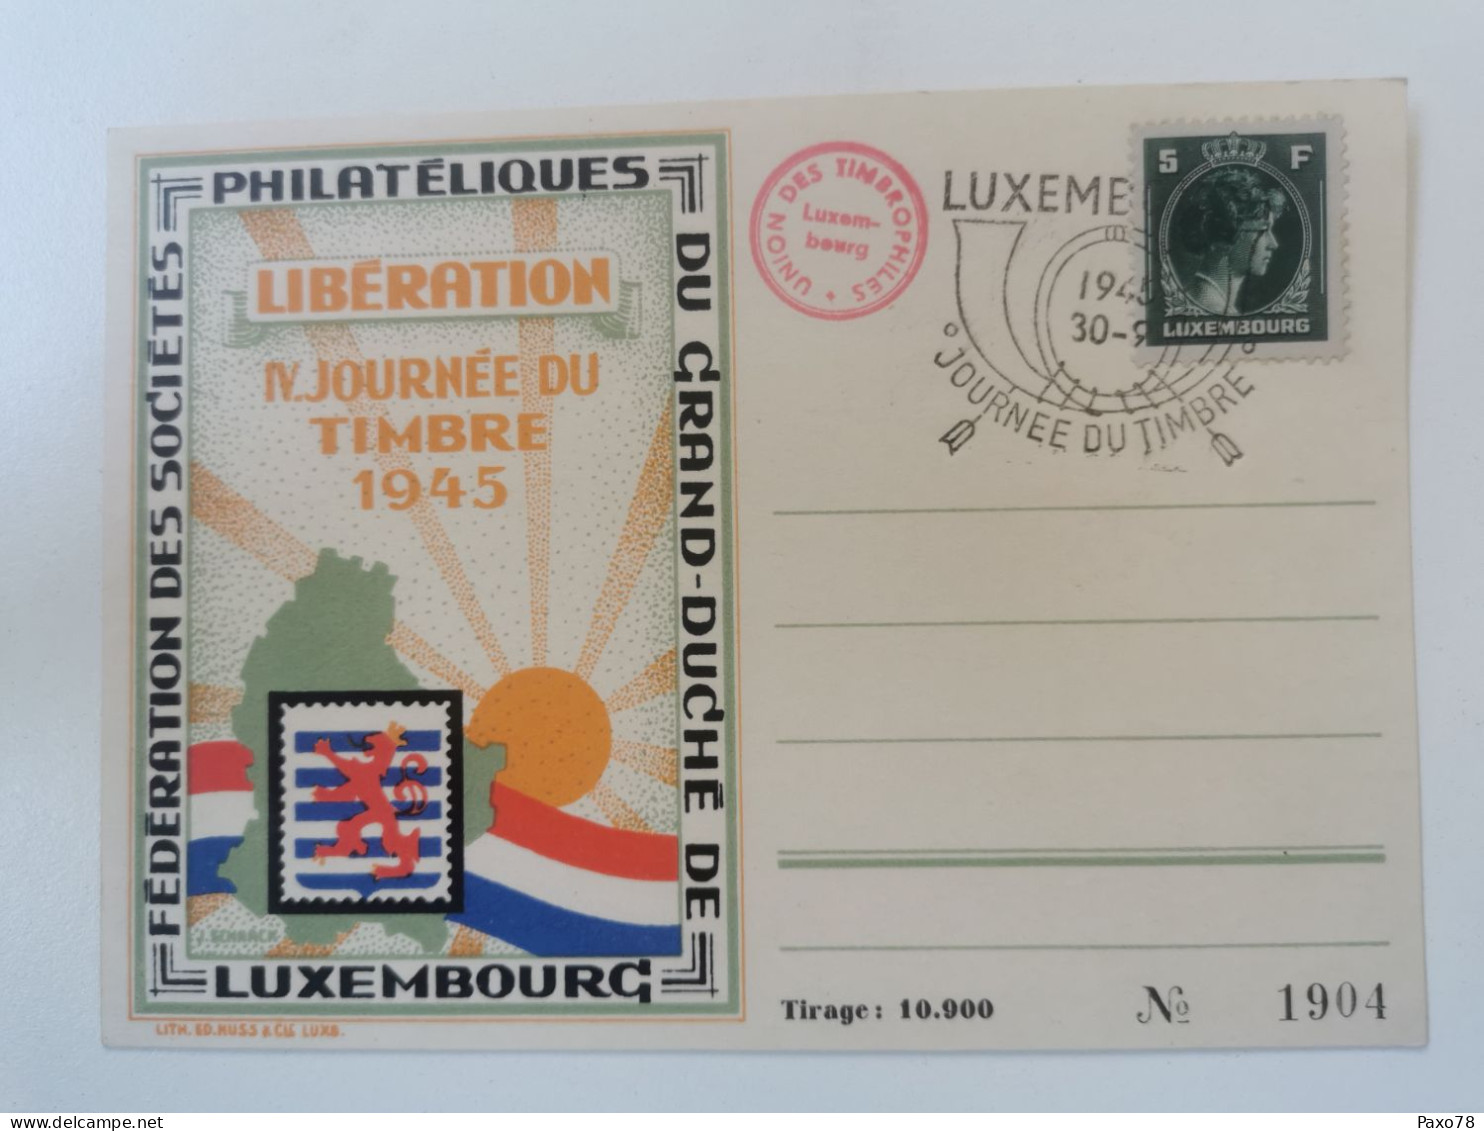 Libération, Journée Du Timbre 1945 - Commemoration Cards